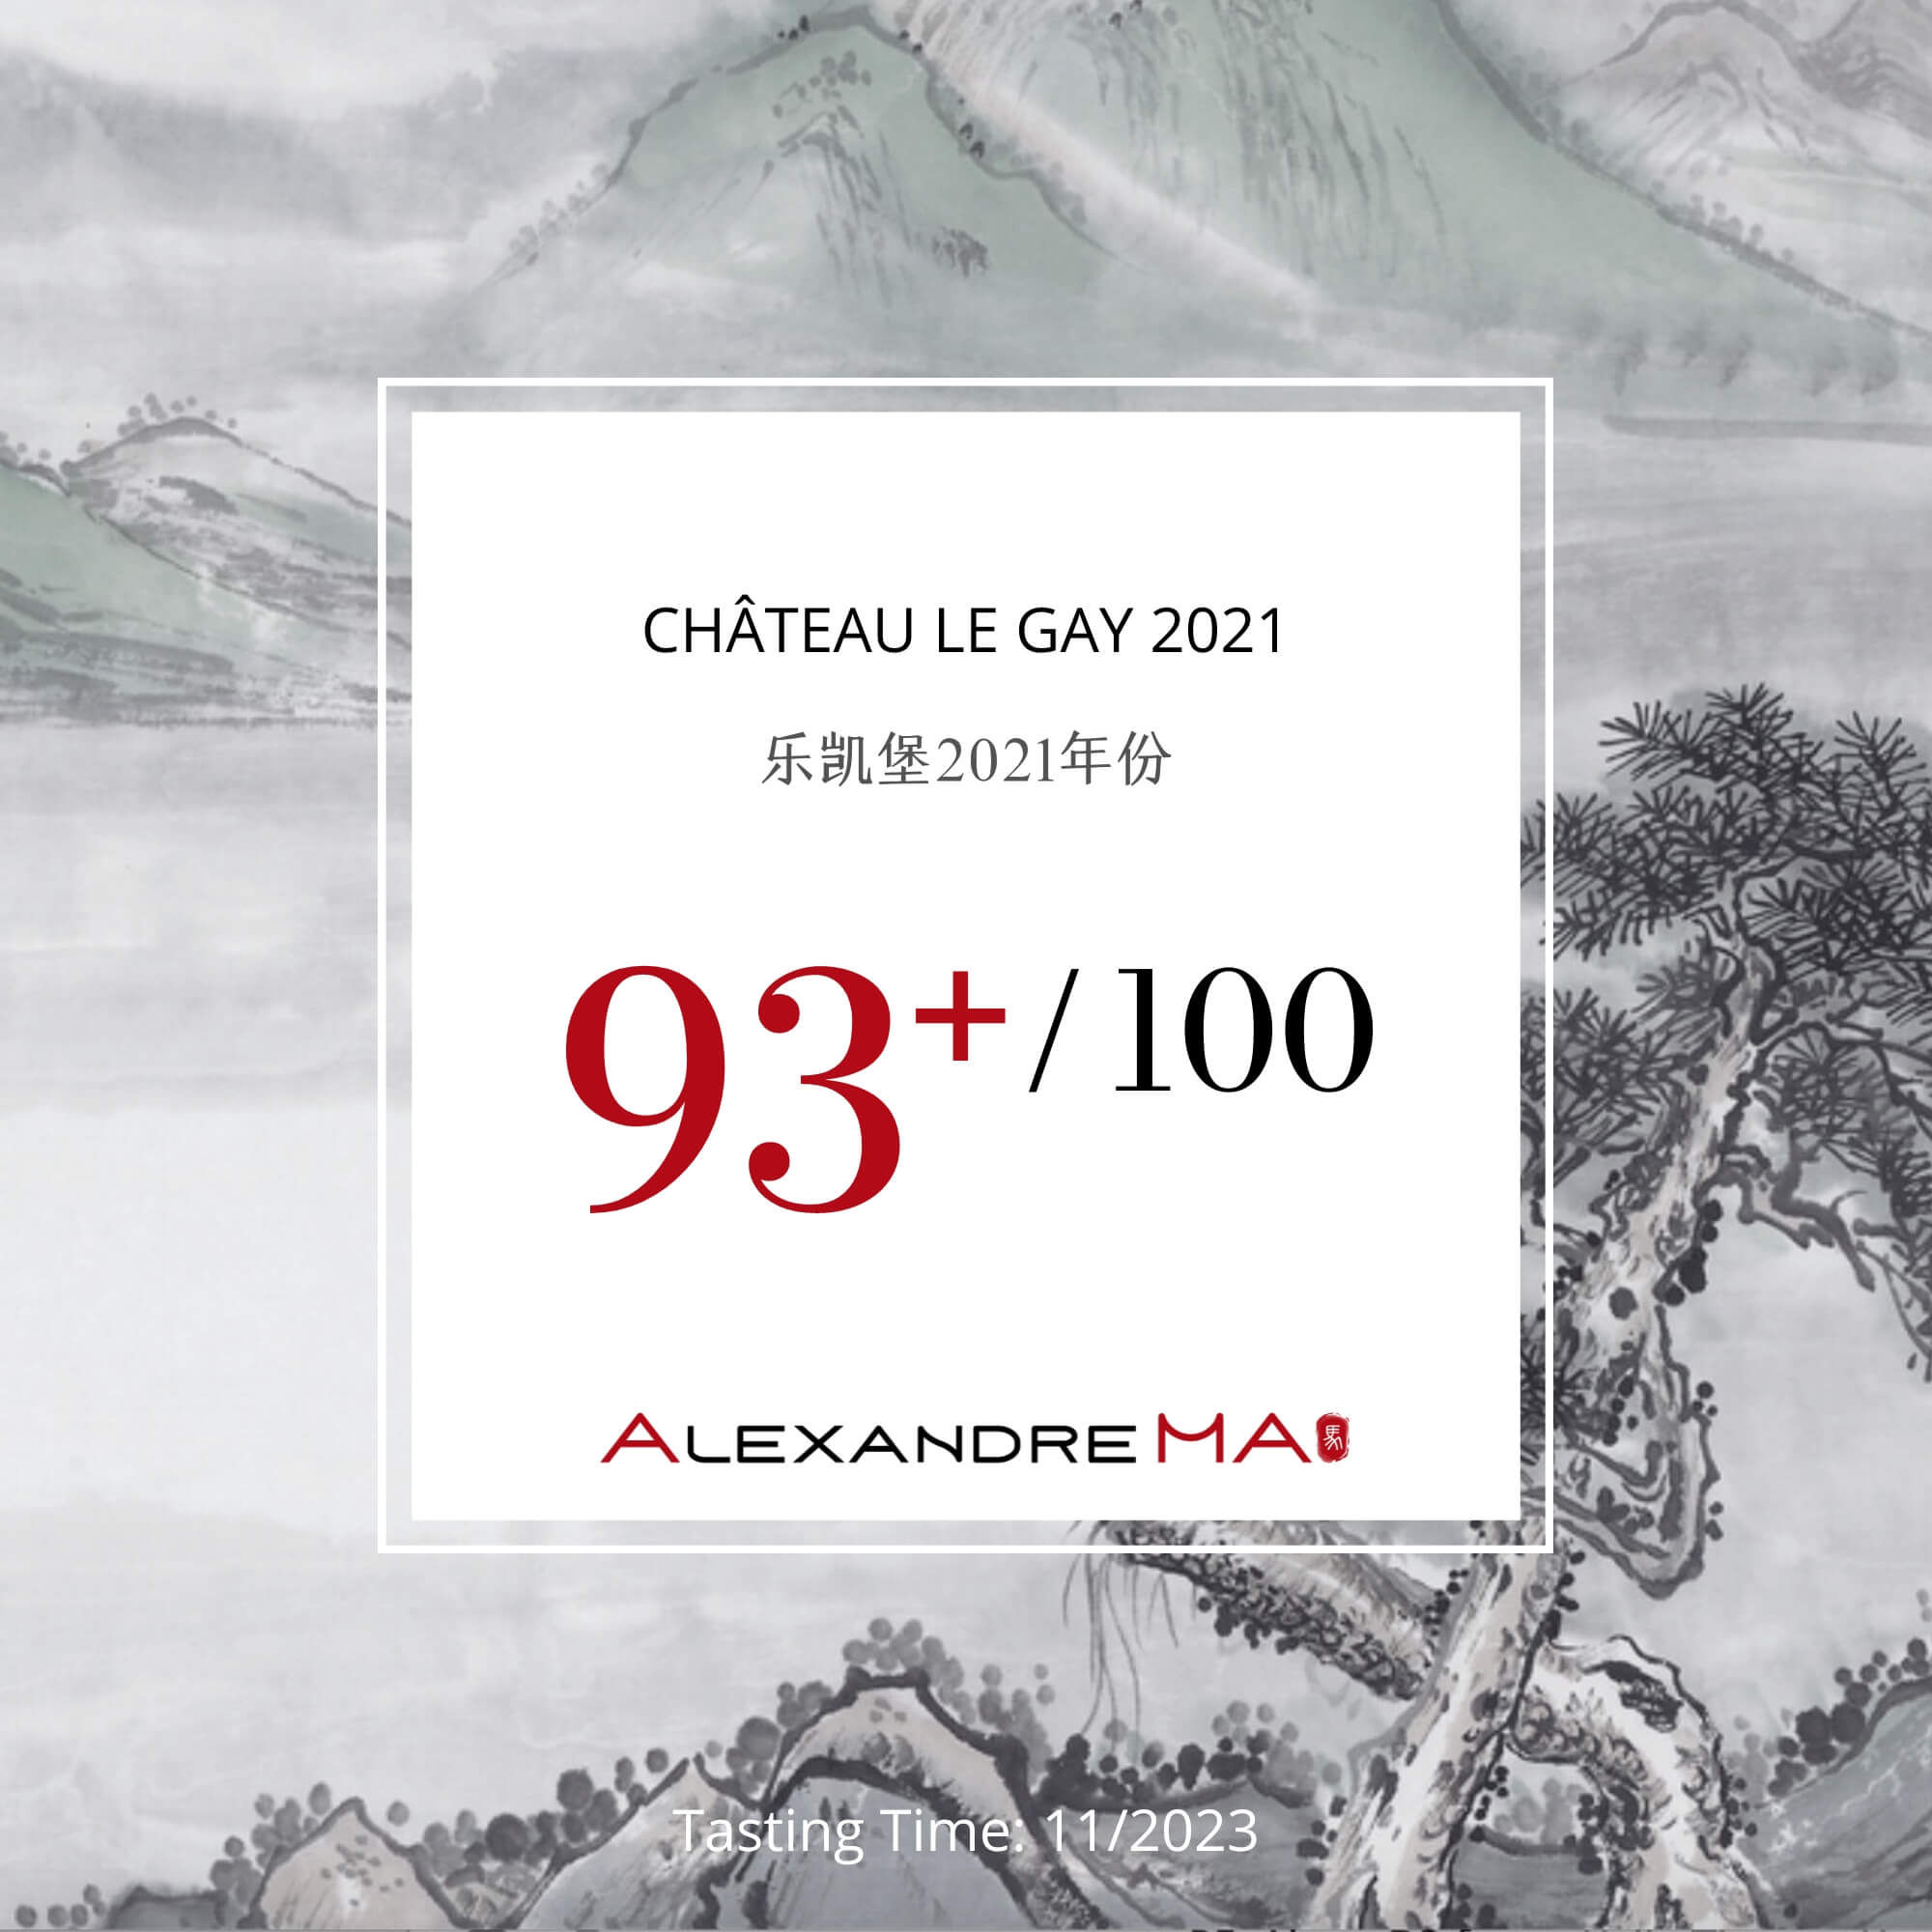 Château Le Gay 2021 乐凯堡 - Alexandre Ma